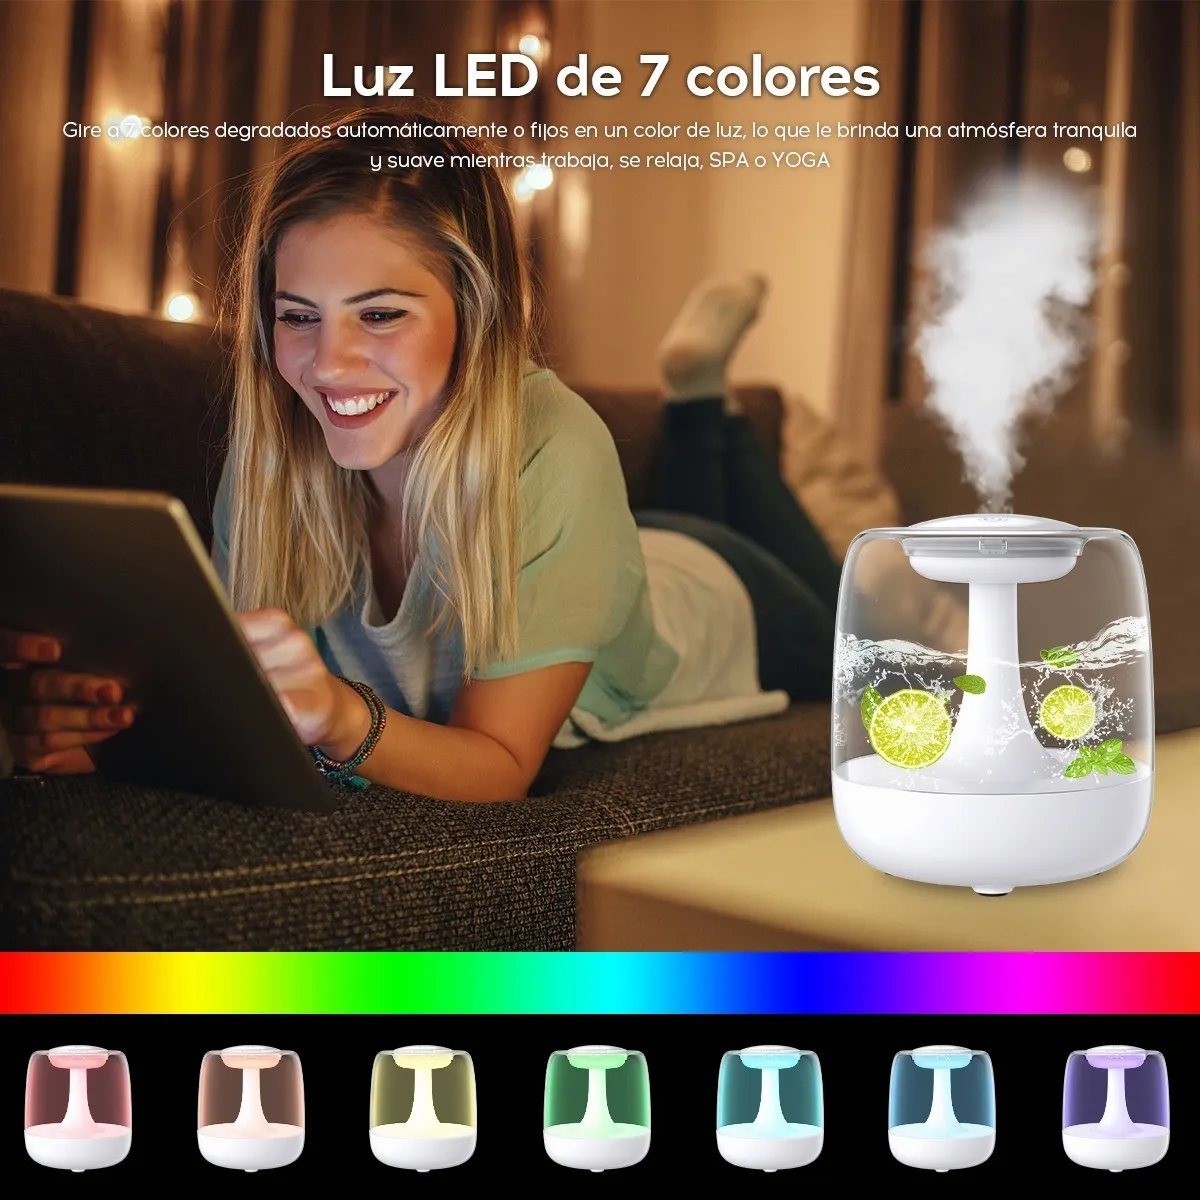 Mini humidificador, humidificador portátil con luces de 7 colores